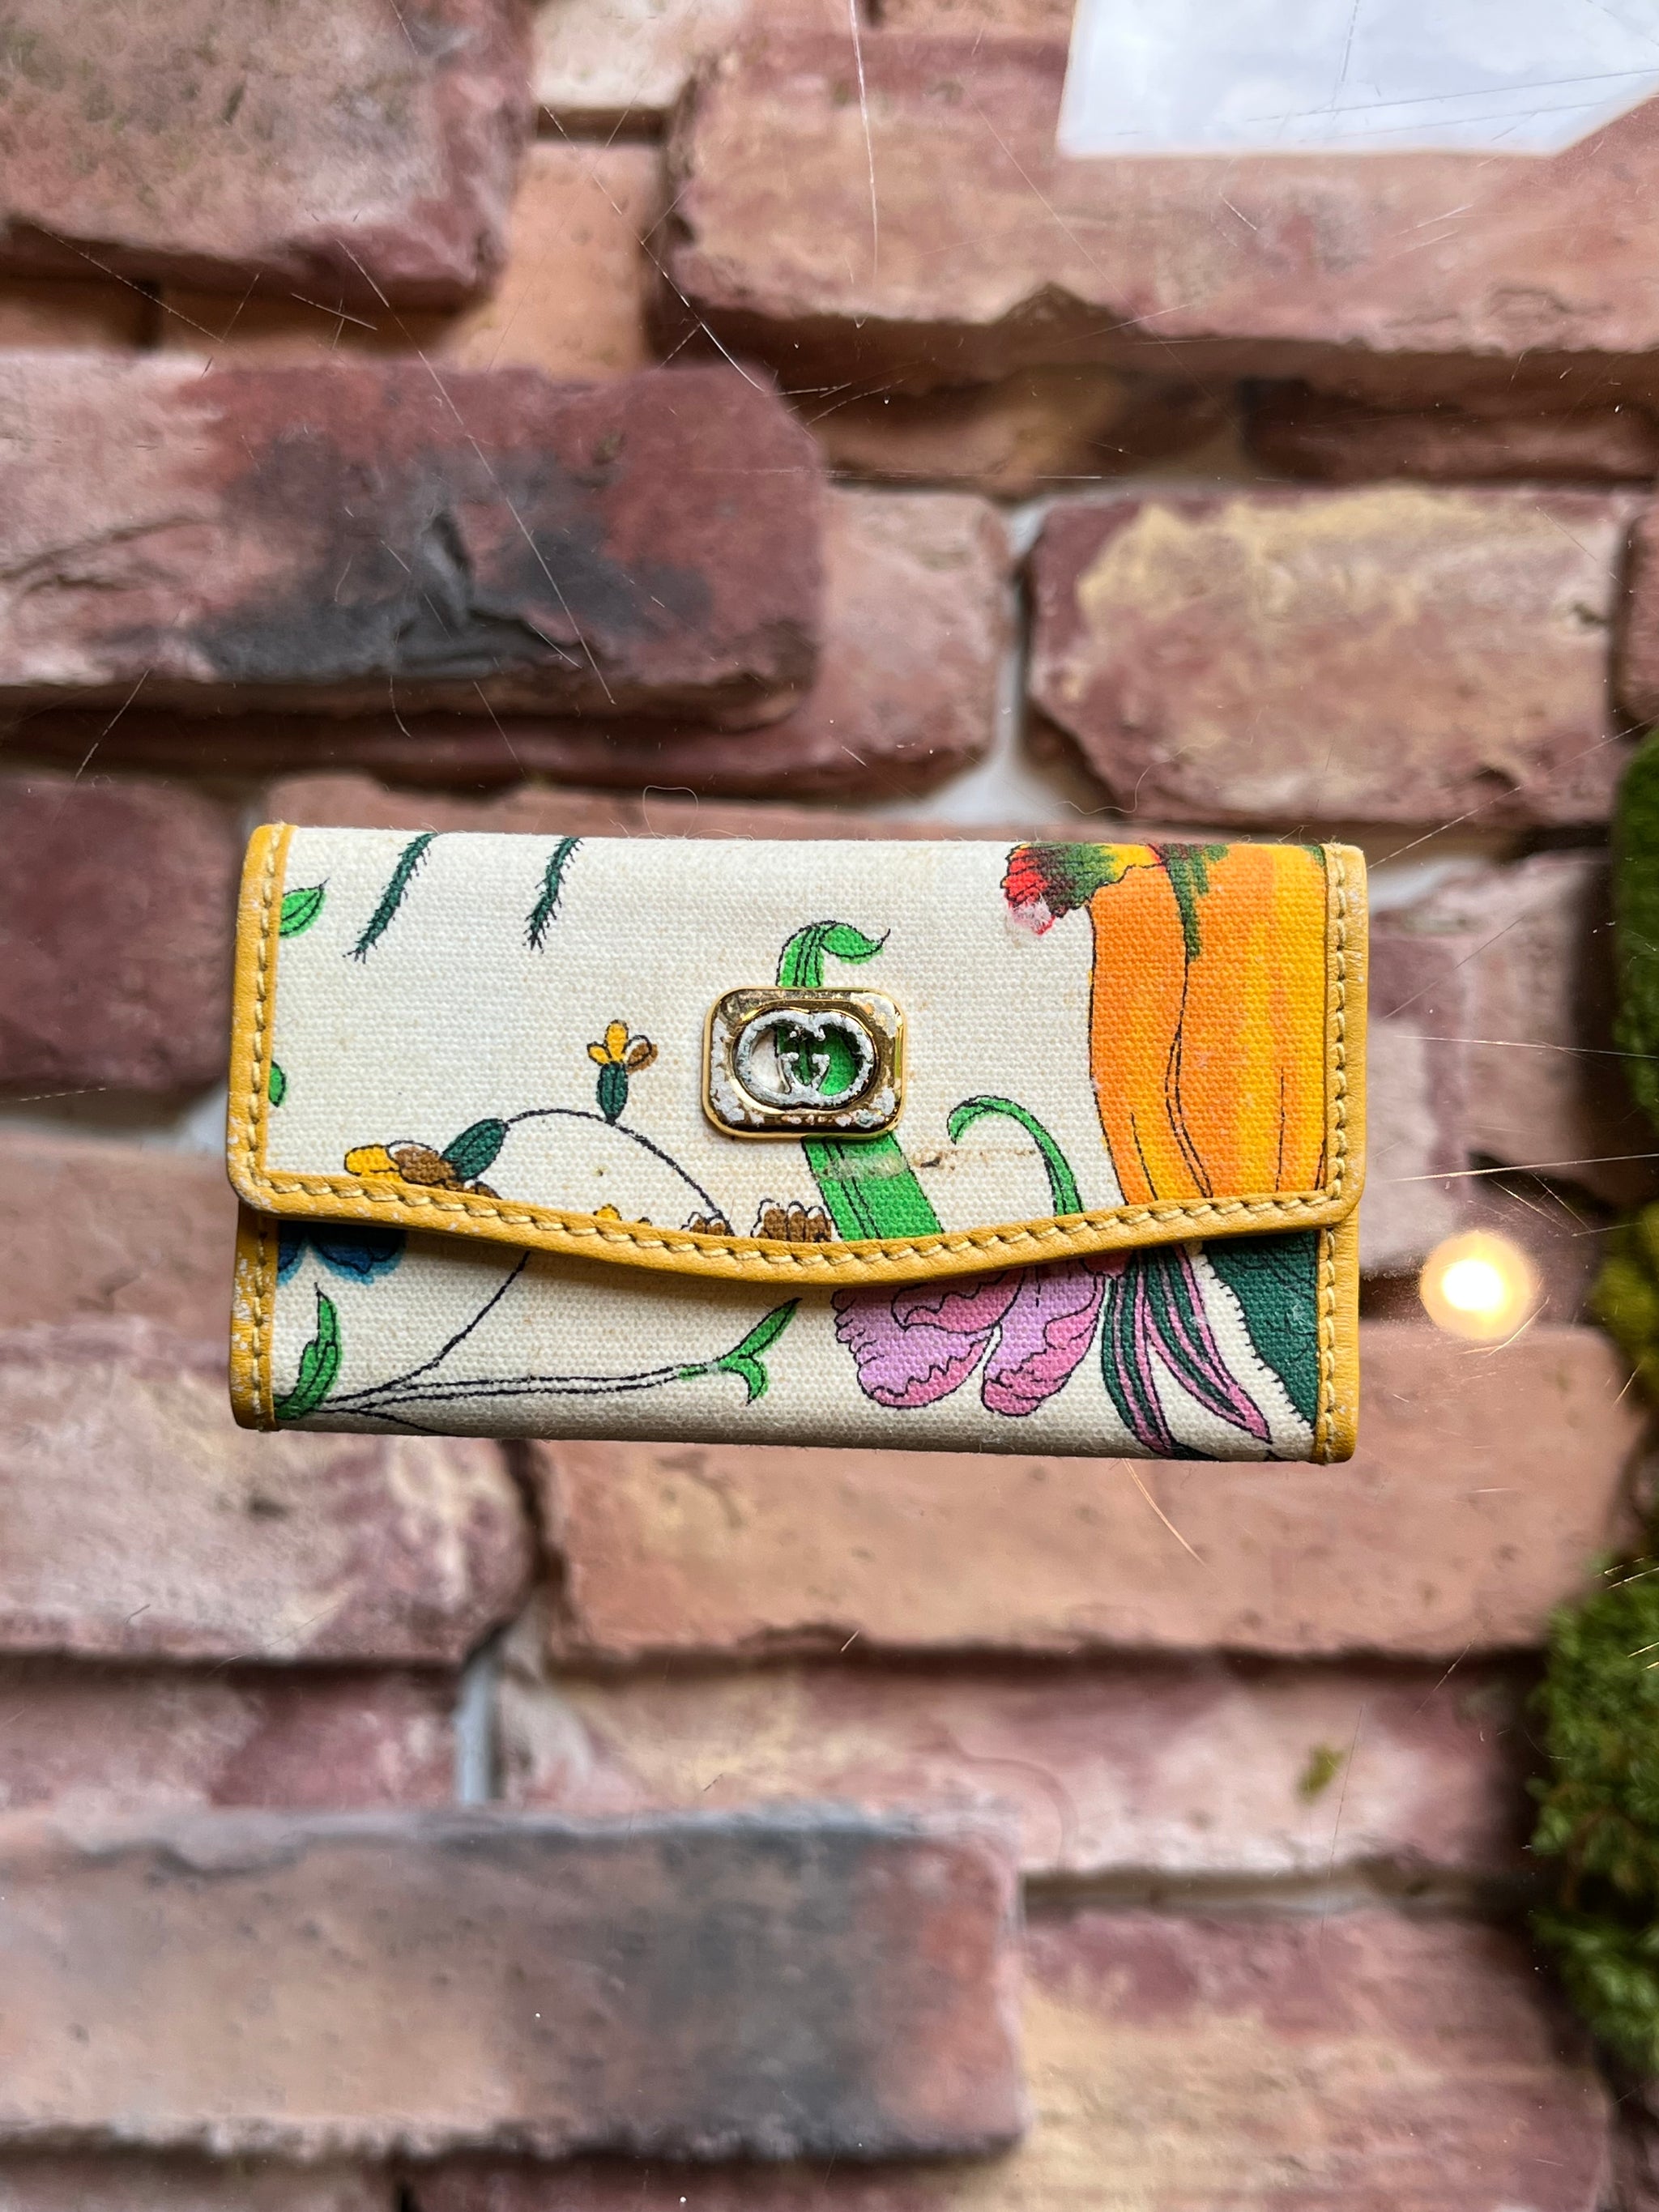 Gucci Vintage Flora Canvas Tote Bag w/Key Holder Set